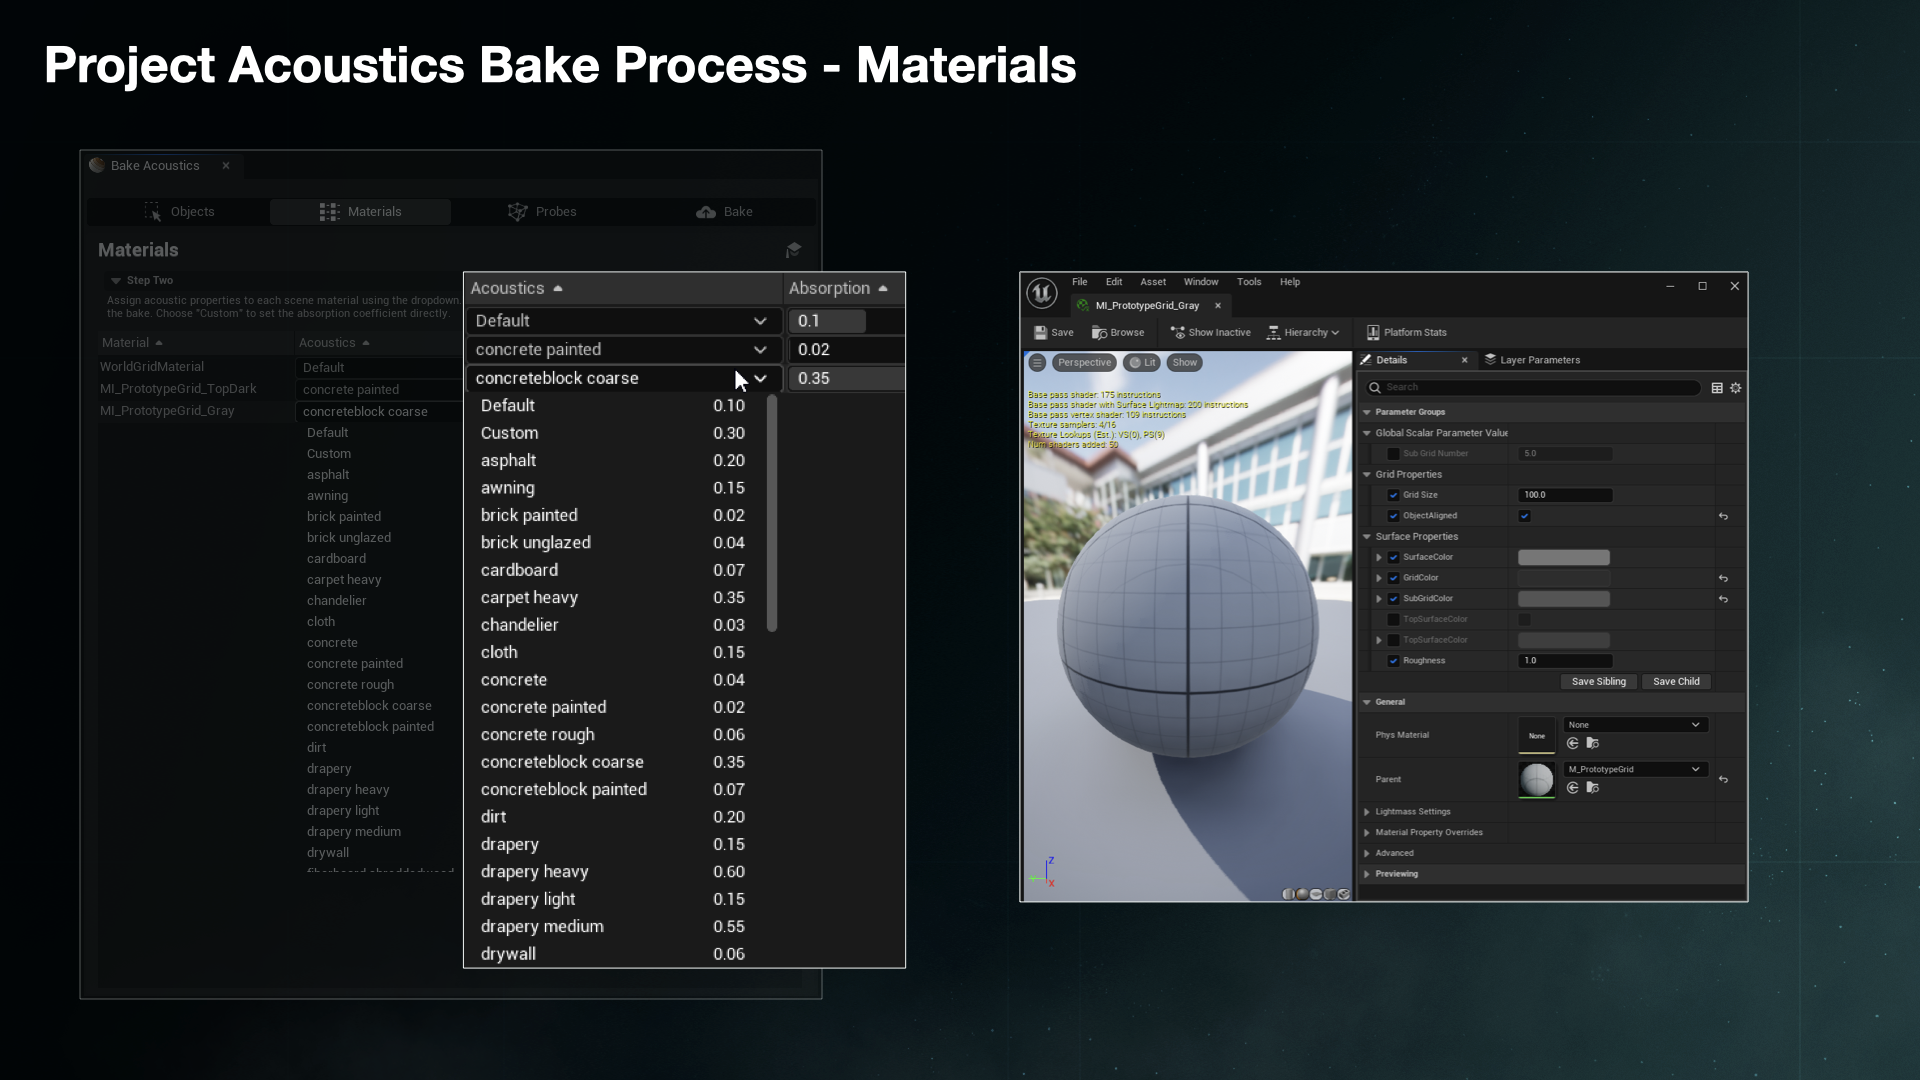 Project Acoustics Bake Process - Materials